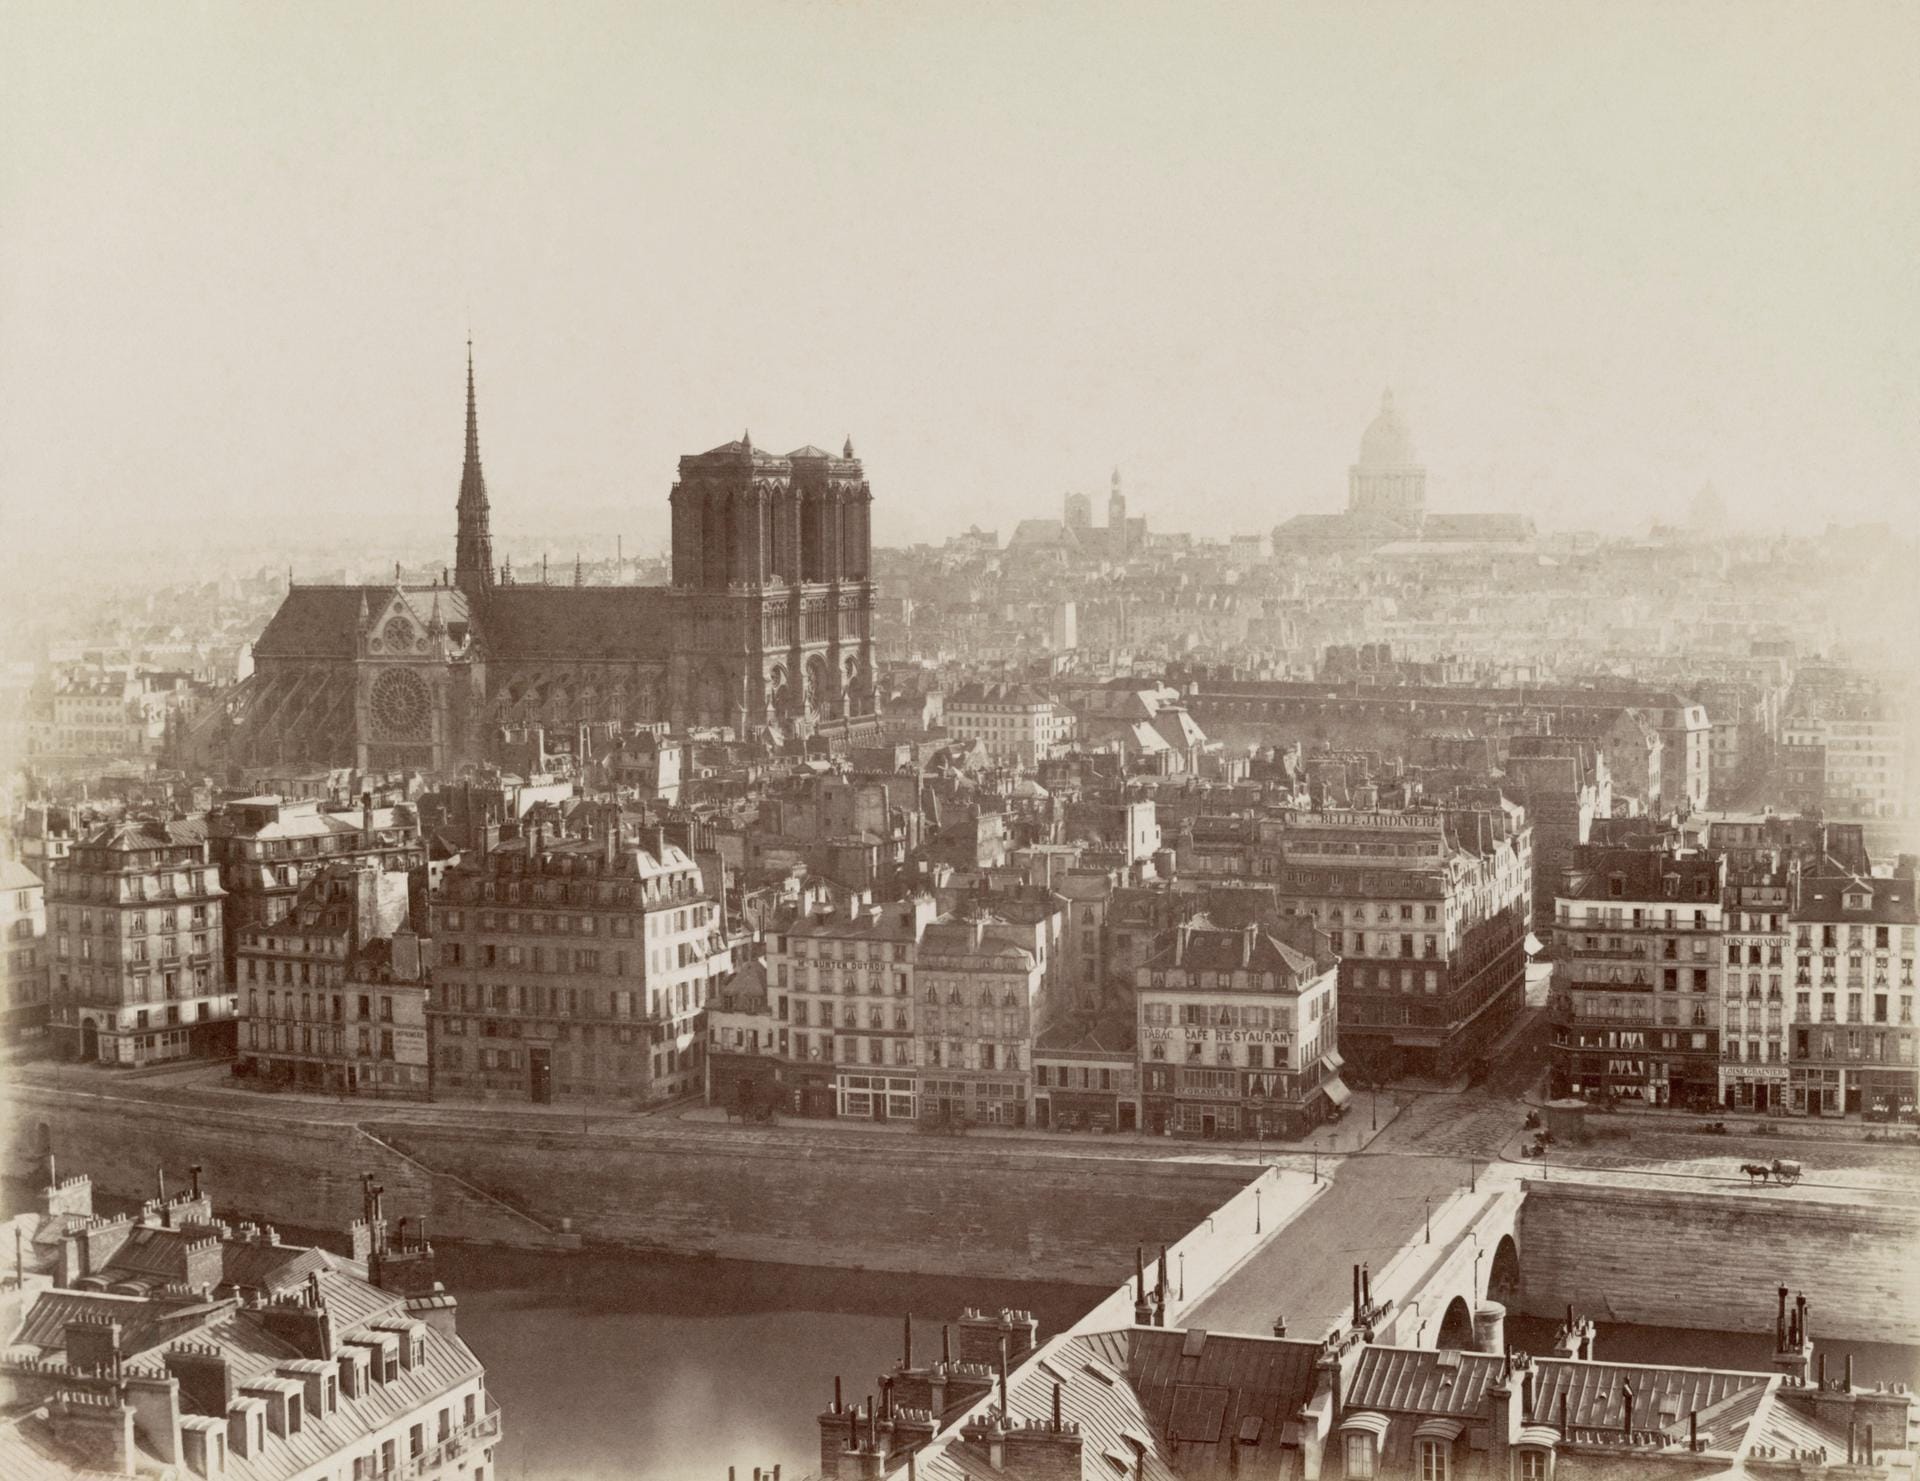 Notre-Dame ca. 1865: Die Kathedrale erhebt sich über die Häuser von Paris. Von 1163 bis 1345 erbaut, gab es immer wieder Erneuerungen der Kirche. Im Jahr 1858 wurden in der erzbischöflichen Grabkammer im Rahmen einer Restaurierung historische Gräber freigelegt.